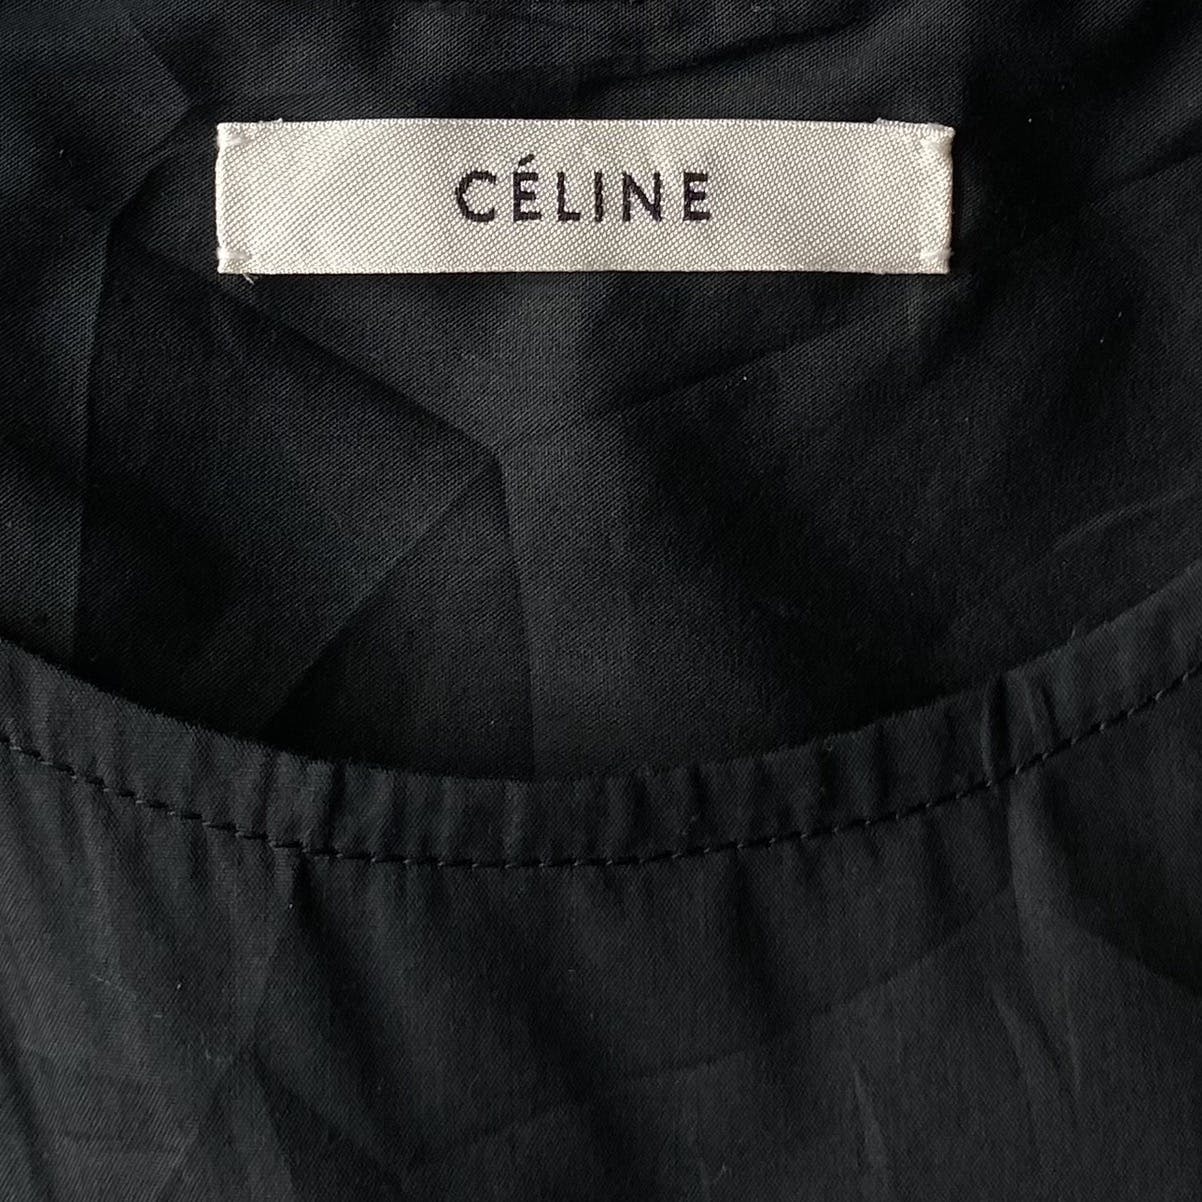 Celine By Phoebe Philo Black Tunic Blouse Shoulder zip - 7